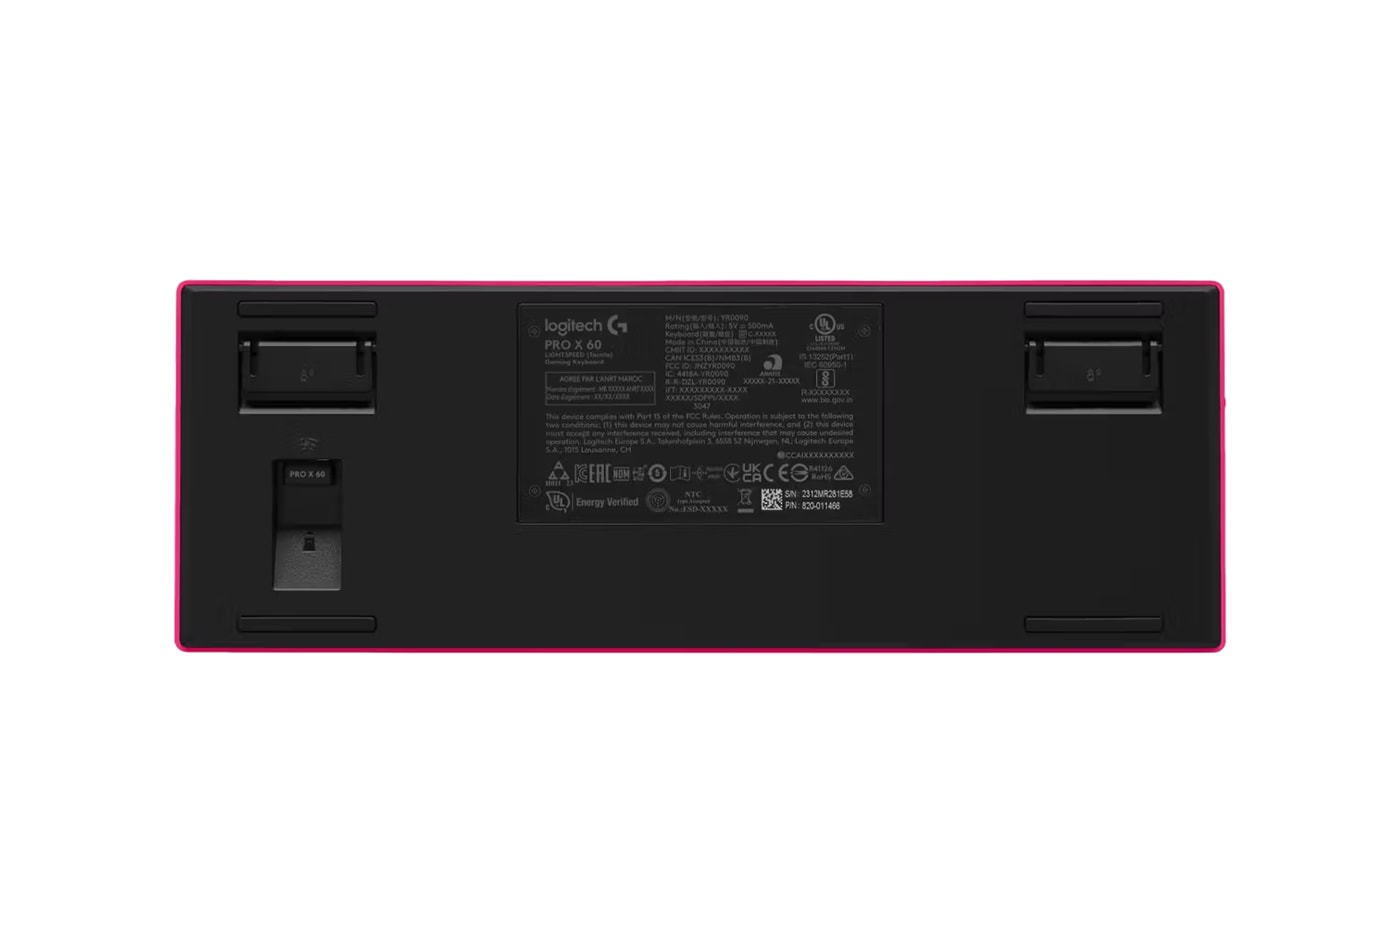 Logitech G представляет беспроводную игровую клавиатуру PRO X 60 Razer Higround Esports